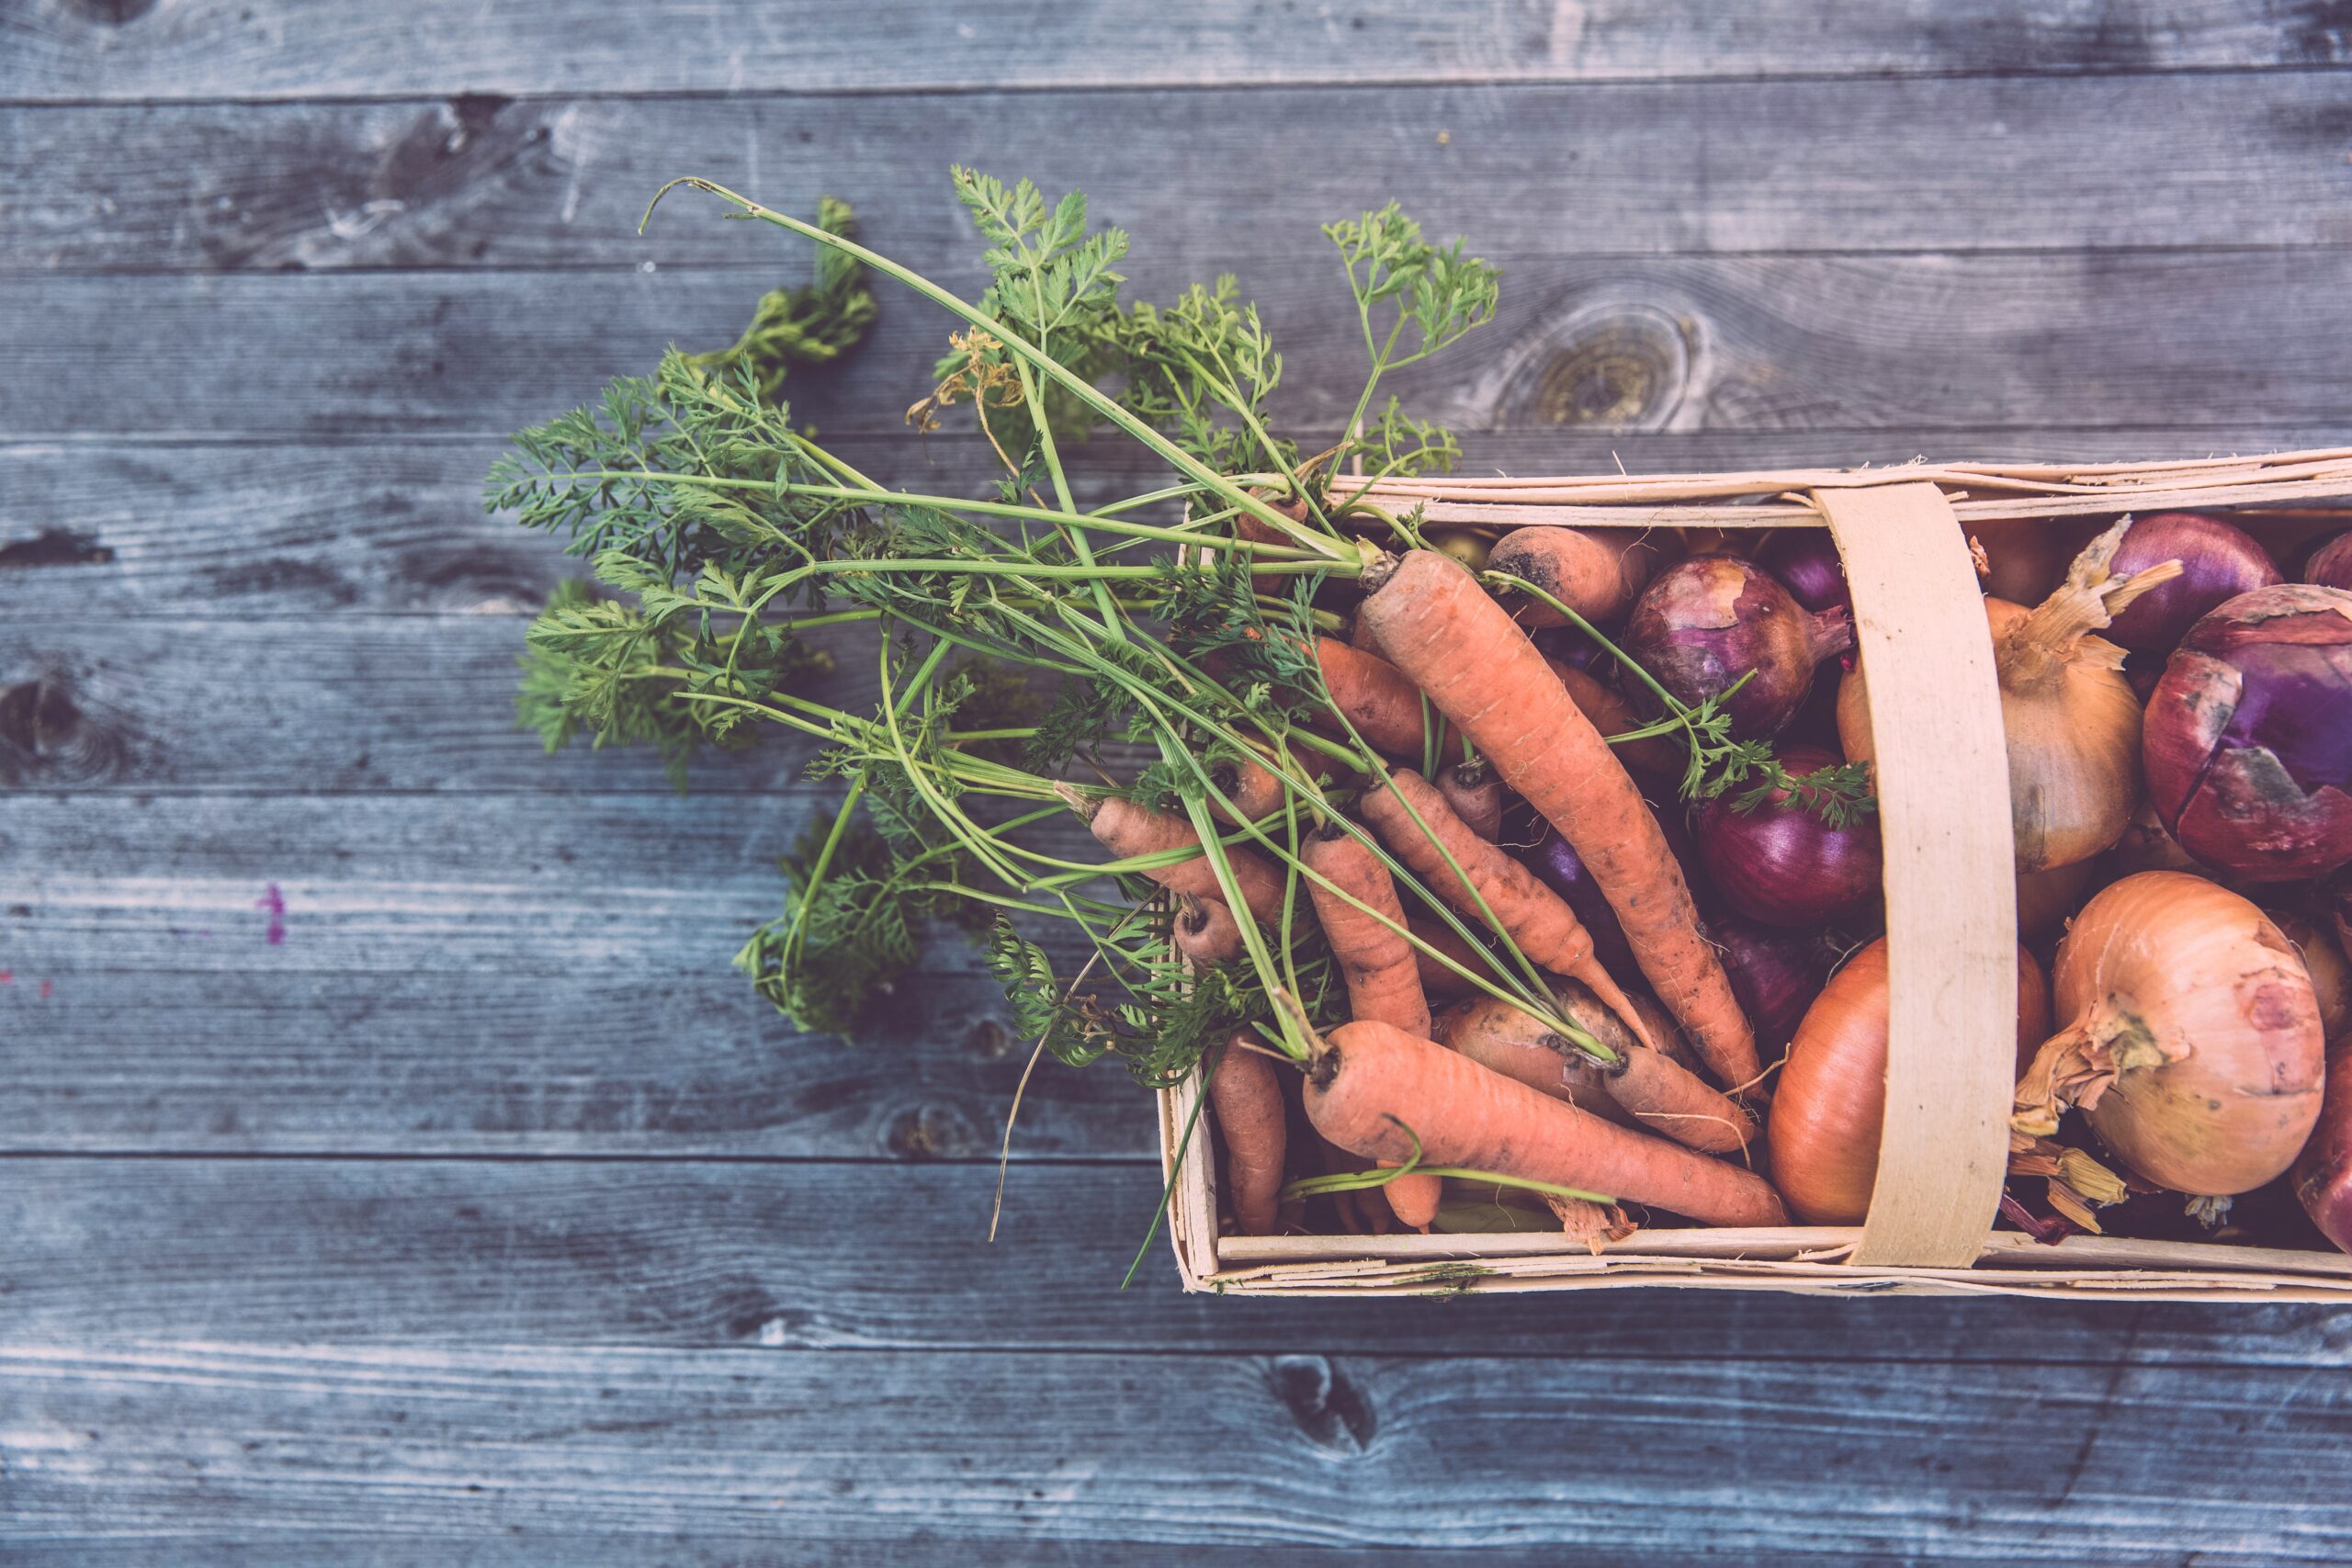 Zbiór warzyw – kiedy należy go przeprowadzać?